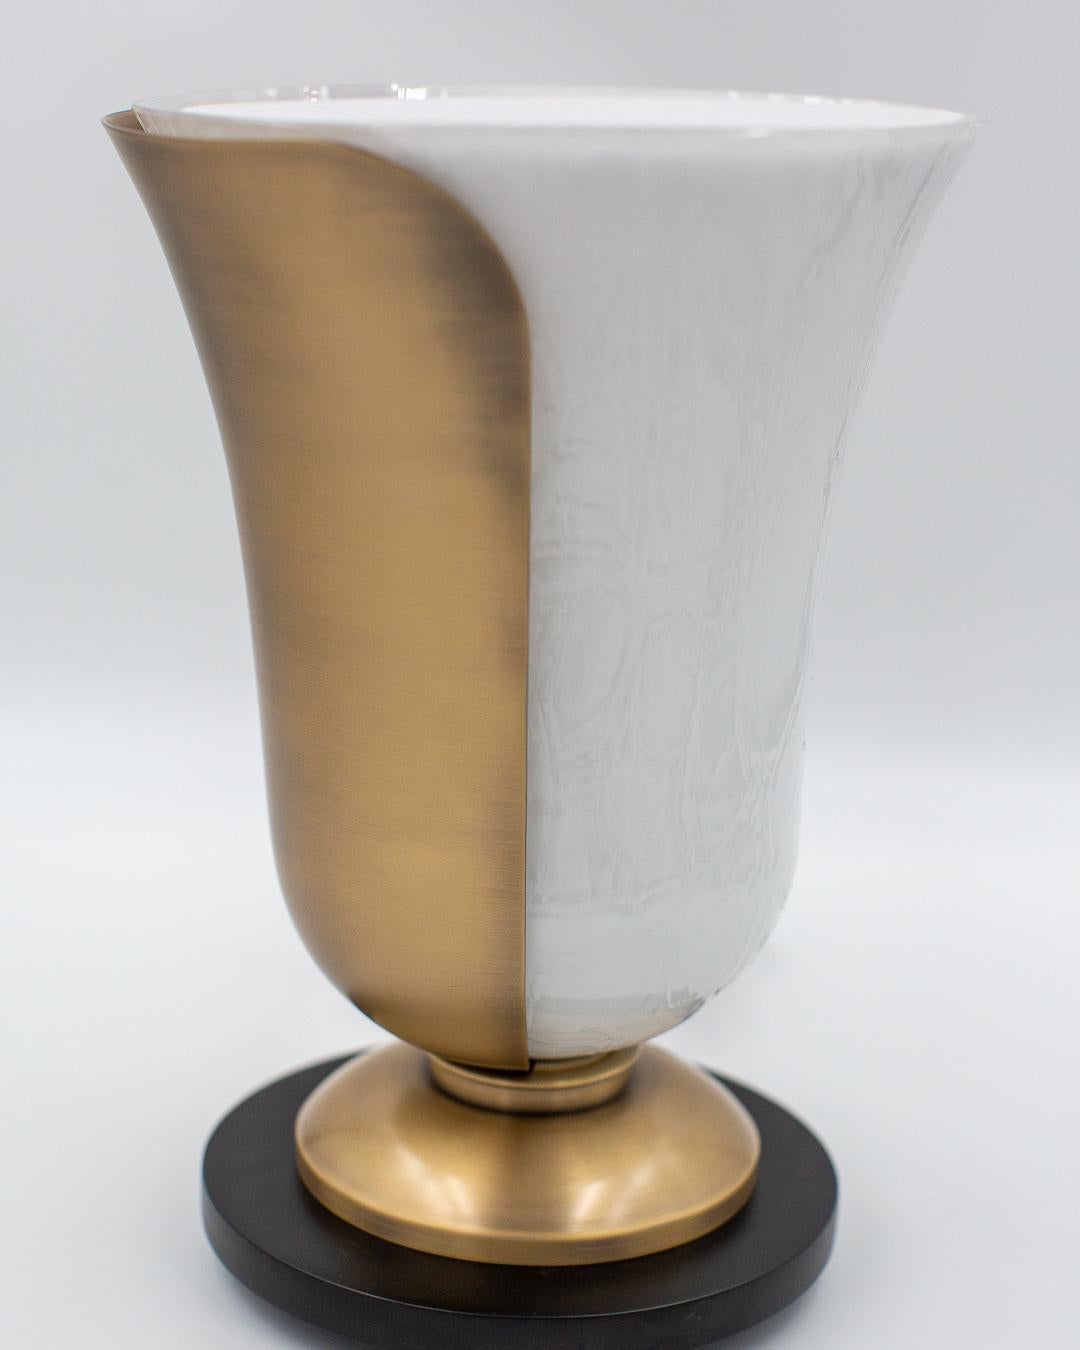 Lampe à poser en verre opalin texturé avec petit diffuseur à poser ou non sur le dessus.
Cette lampe en forme de coupole est délicatement recouverte une un coté par un pétale en bronze finition antique. Son socle est de la même finition. Pour ce